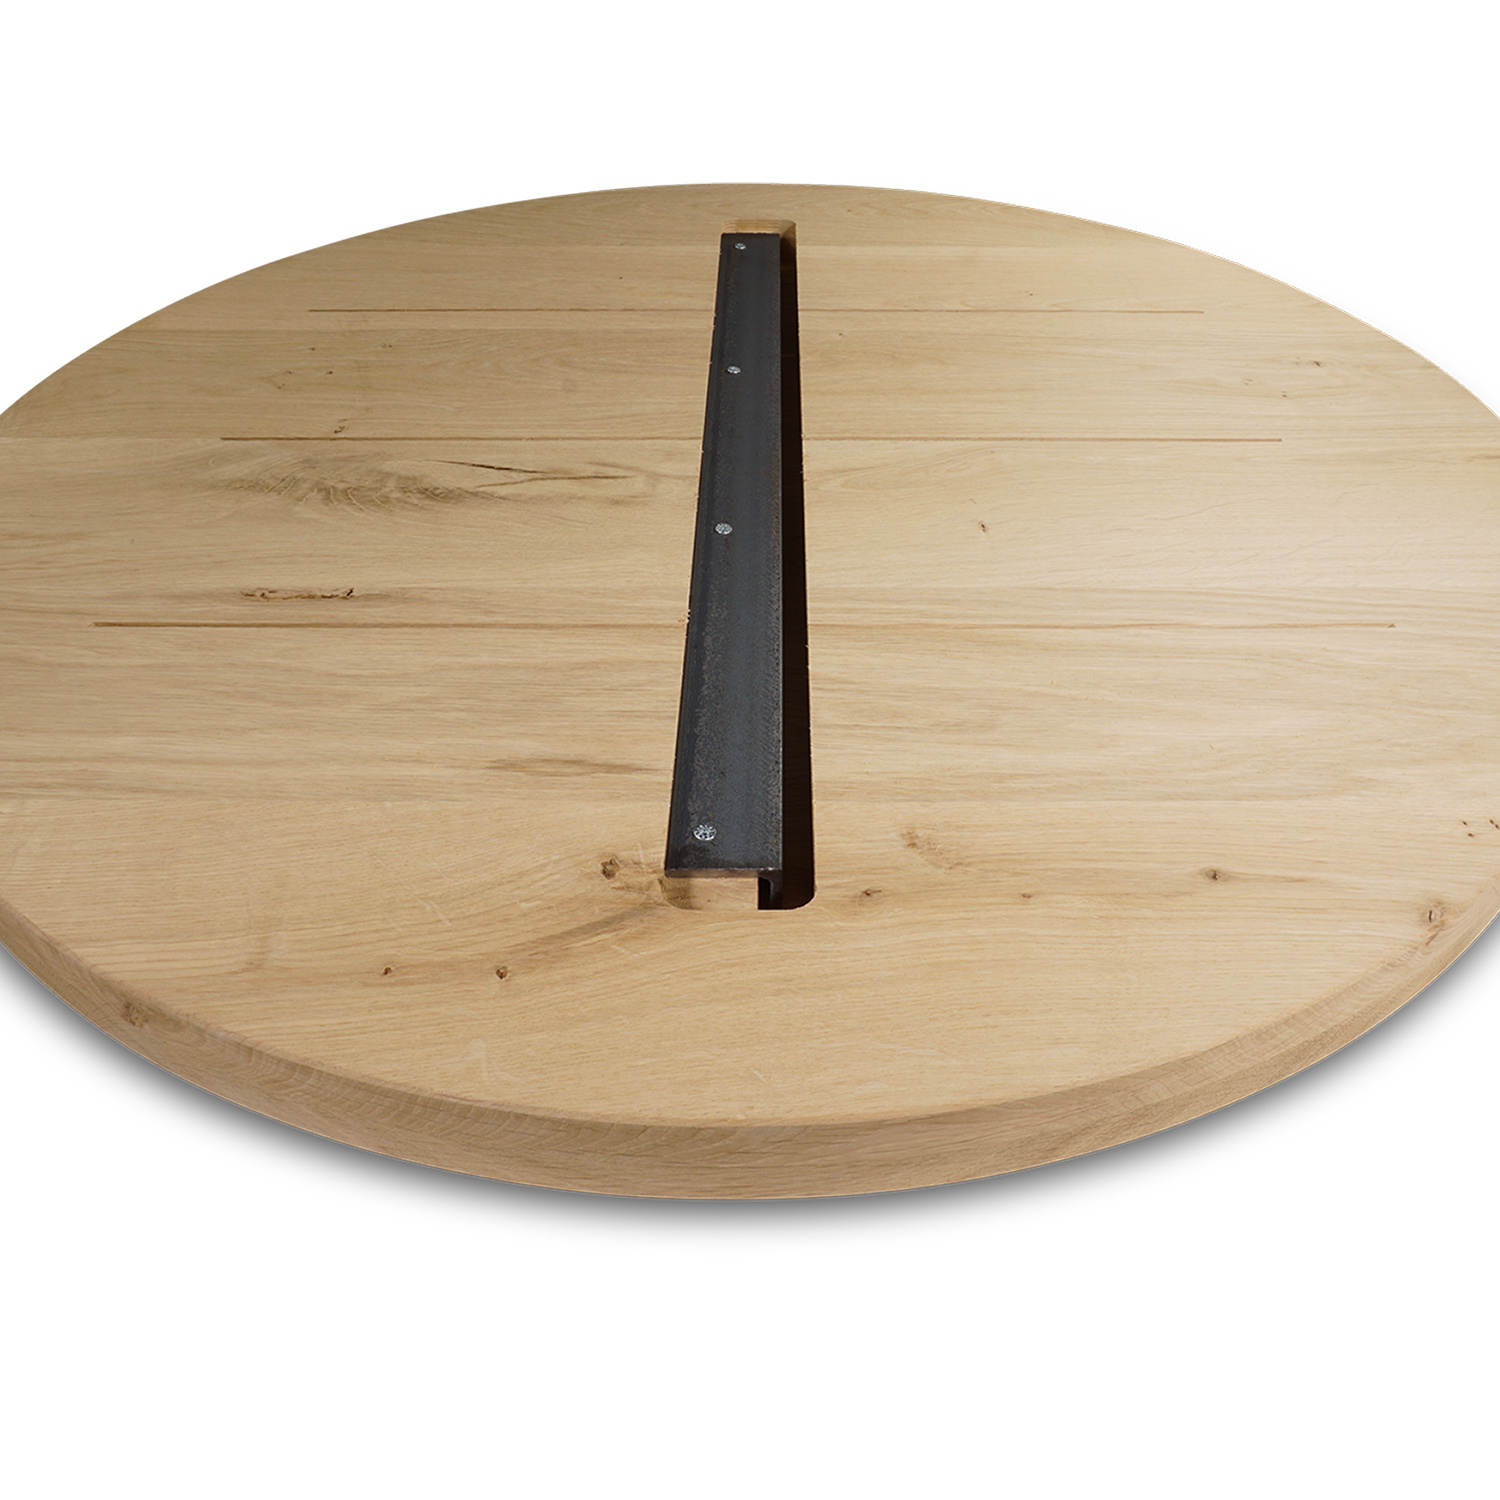  Tischplatte Eiche rund nach Maß - 4 cm dick (2-lagig) - Eichenholz rustikal - Durchmesser: 35 - 125 cm - Eiche Tischplatte rund massiv - verleimt & künstlich getrocknet (HF 8-12%)